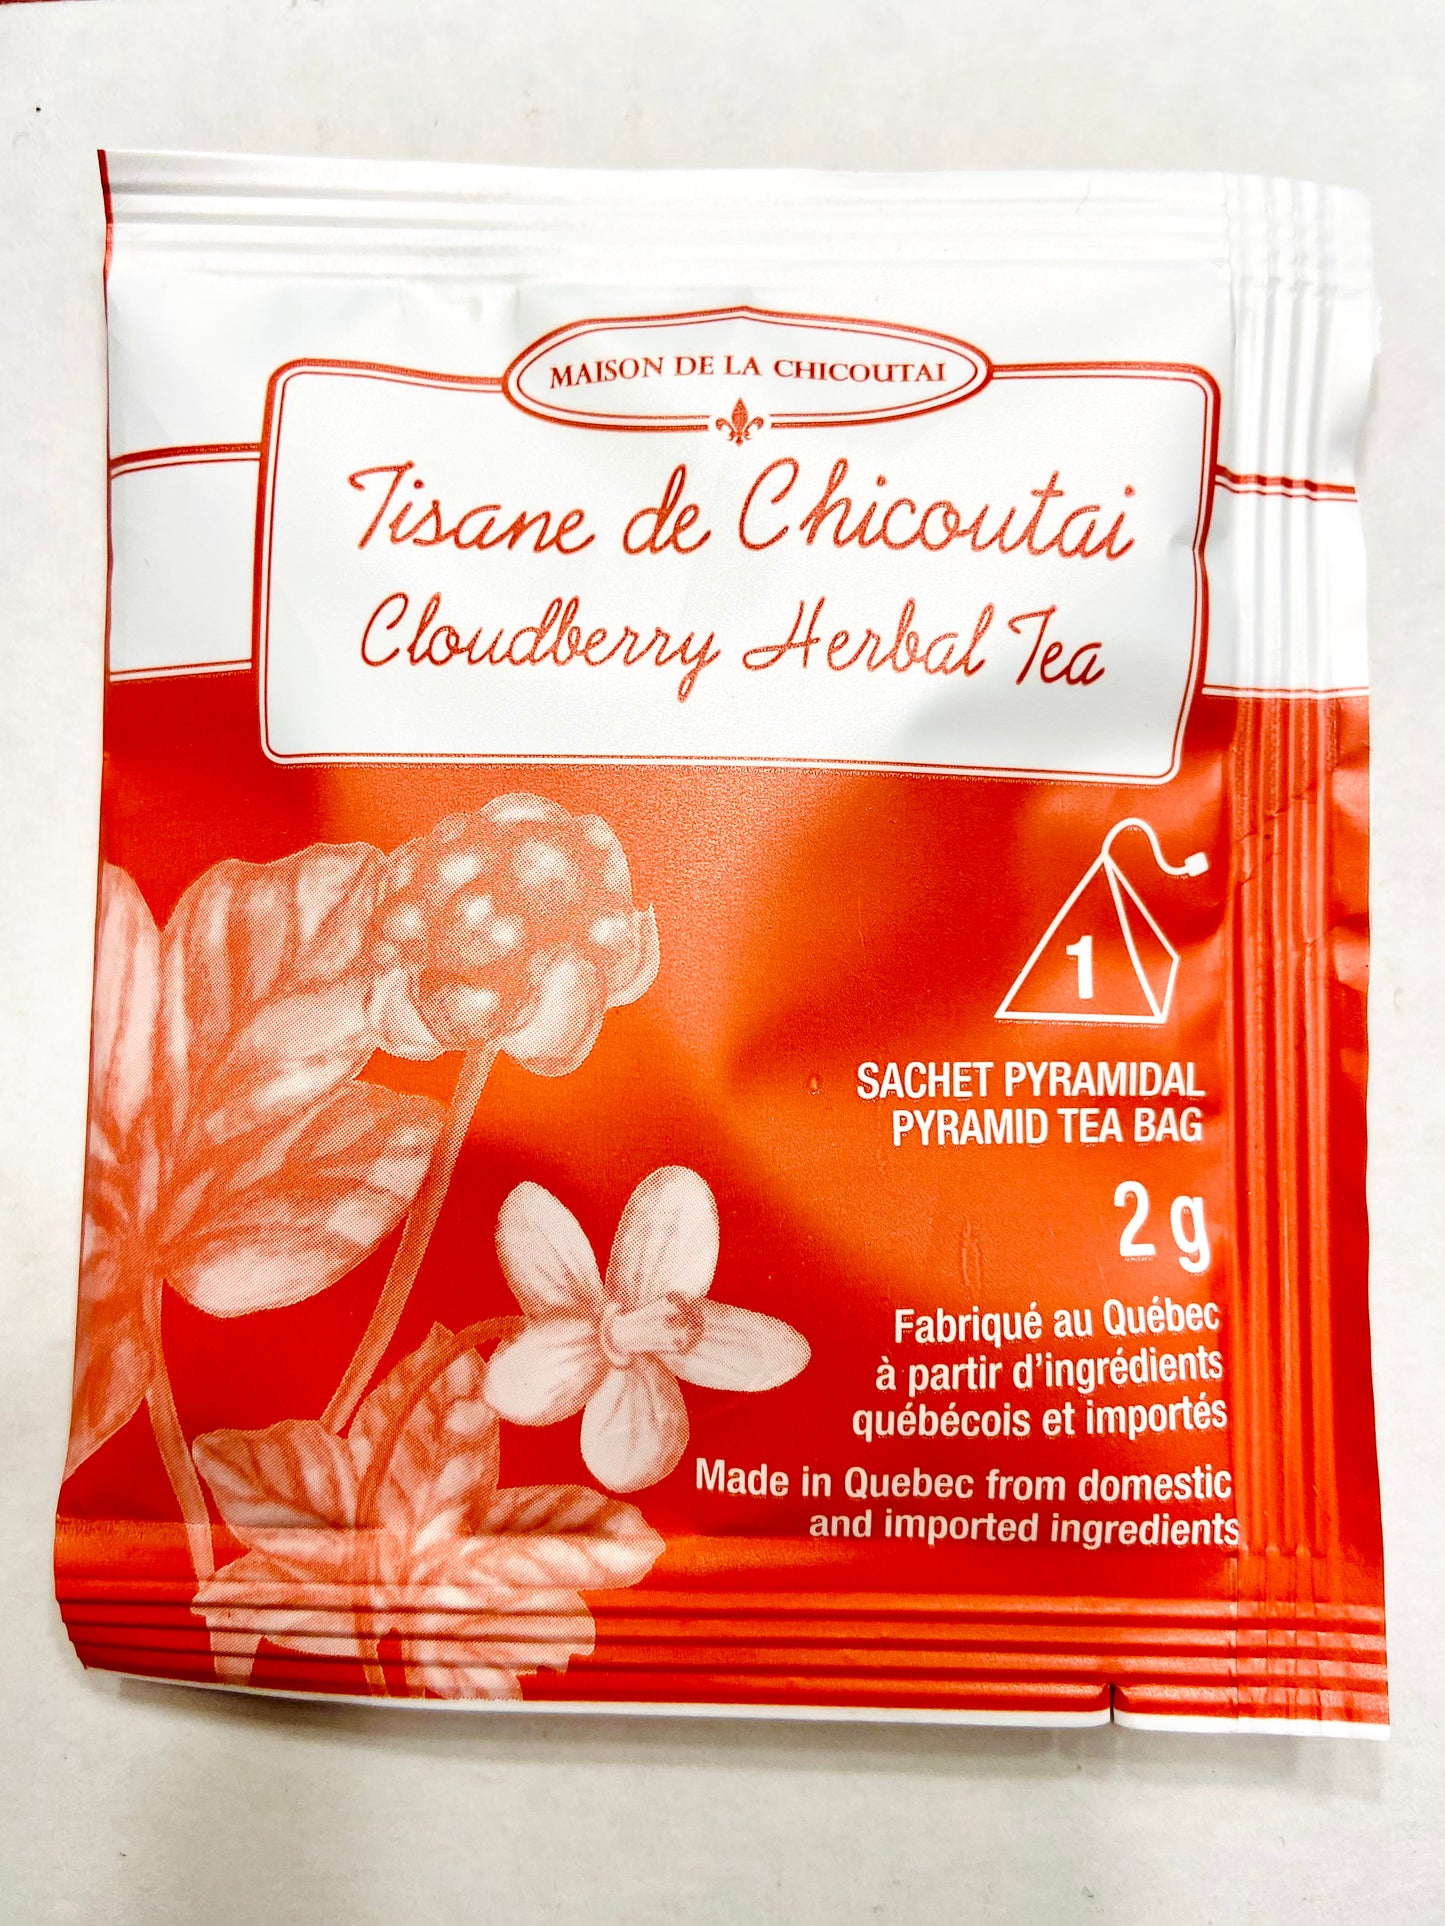 Cloudberry Herbal Tea - Individual Teabags - Tisane de Chicoutai